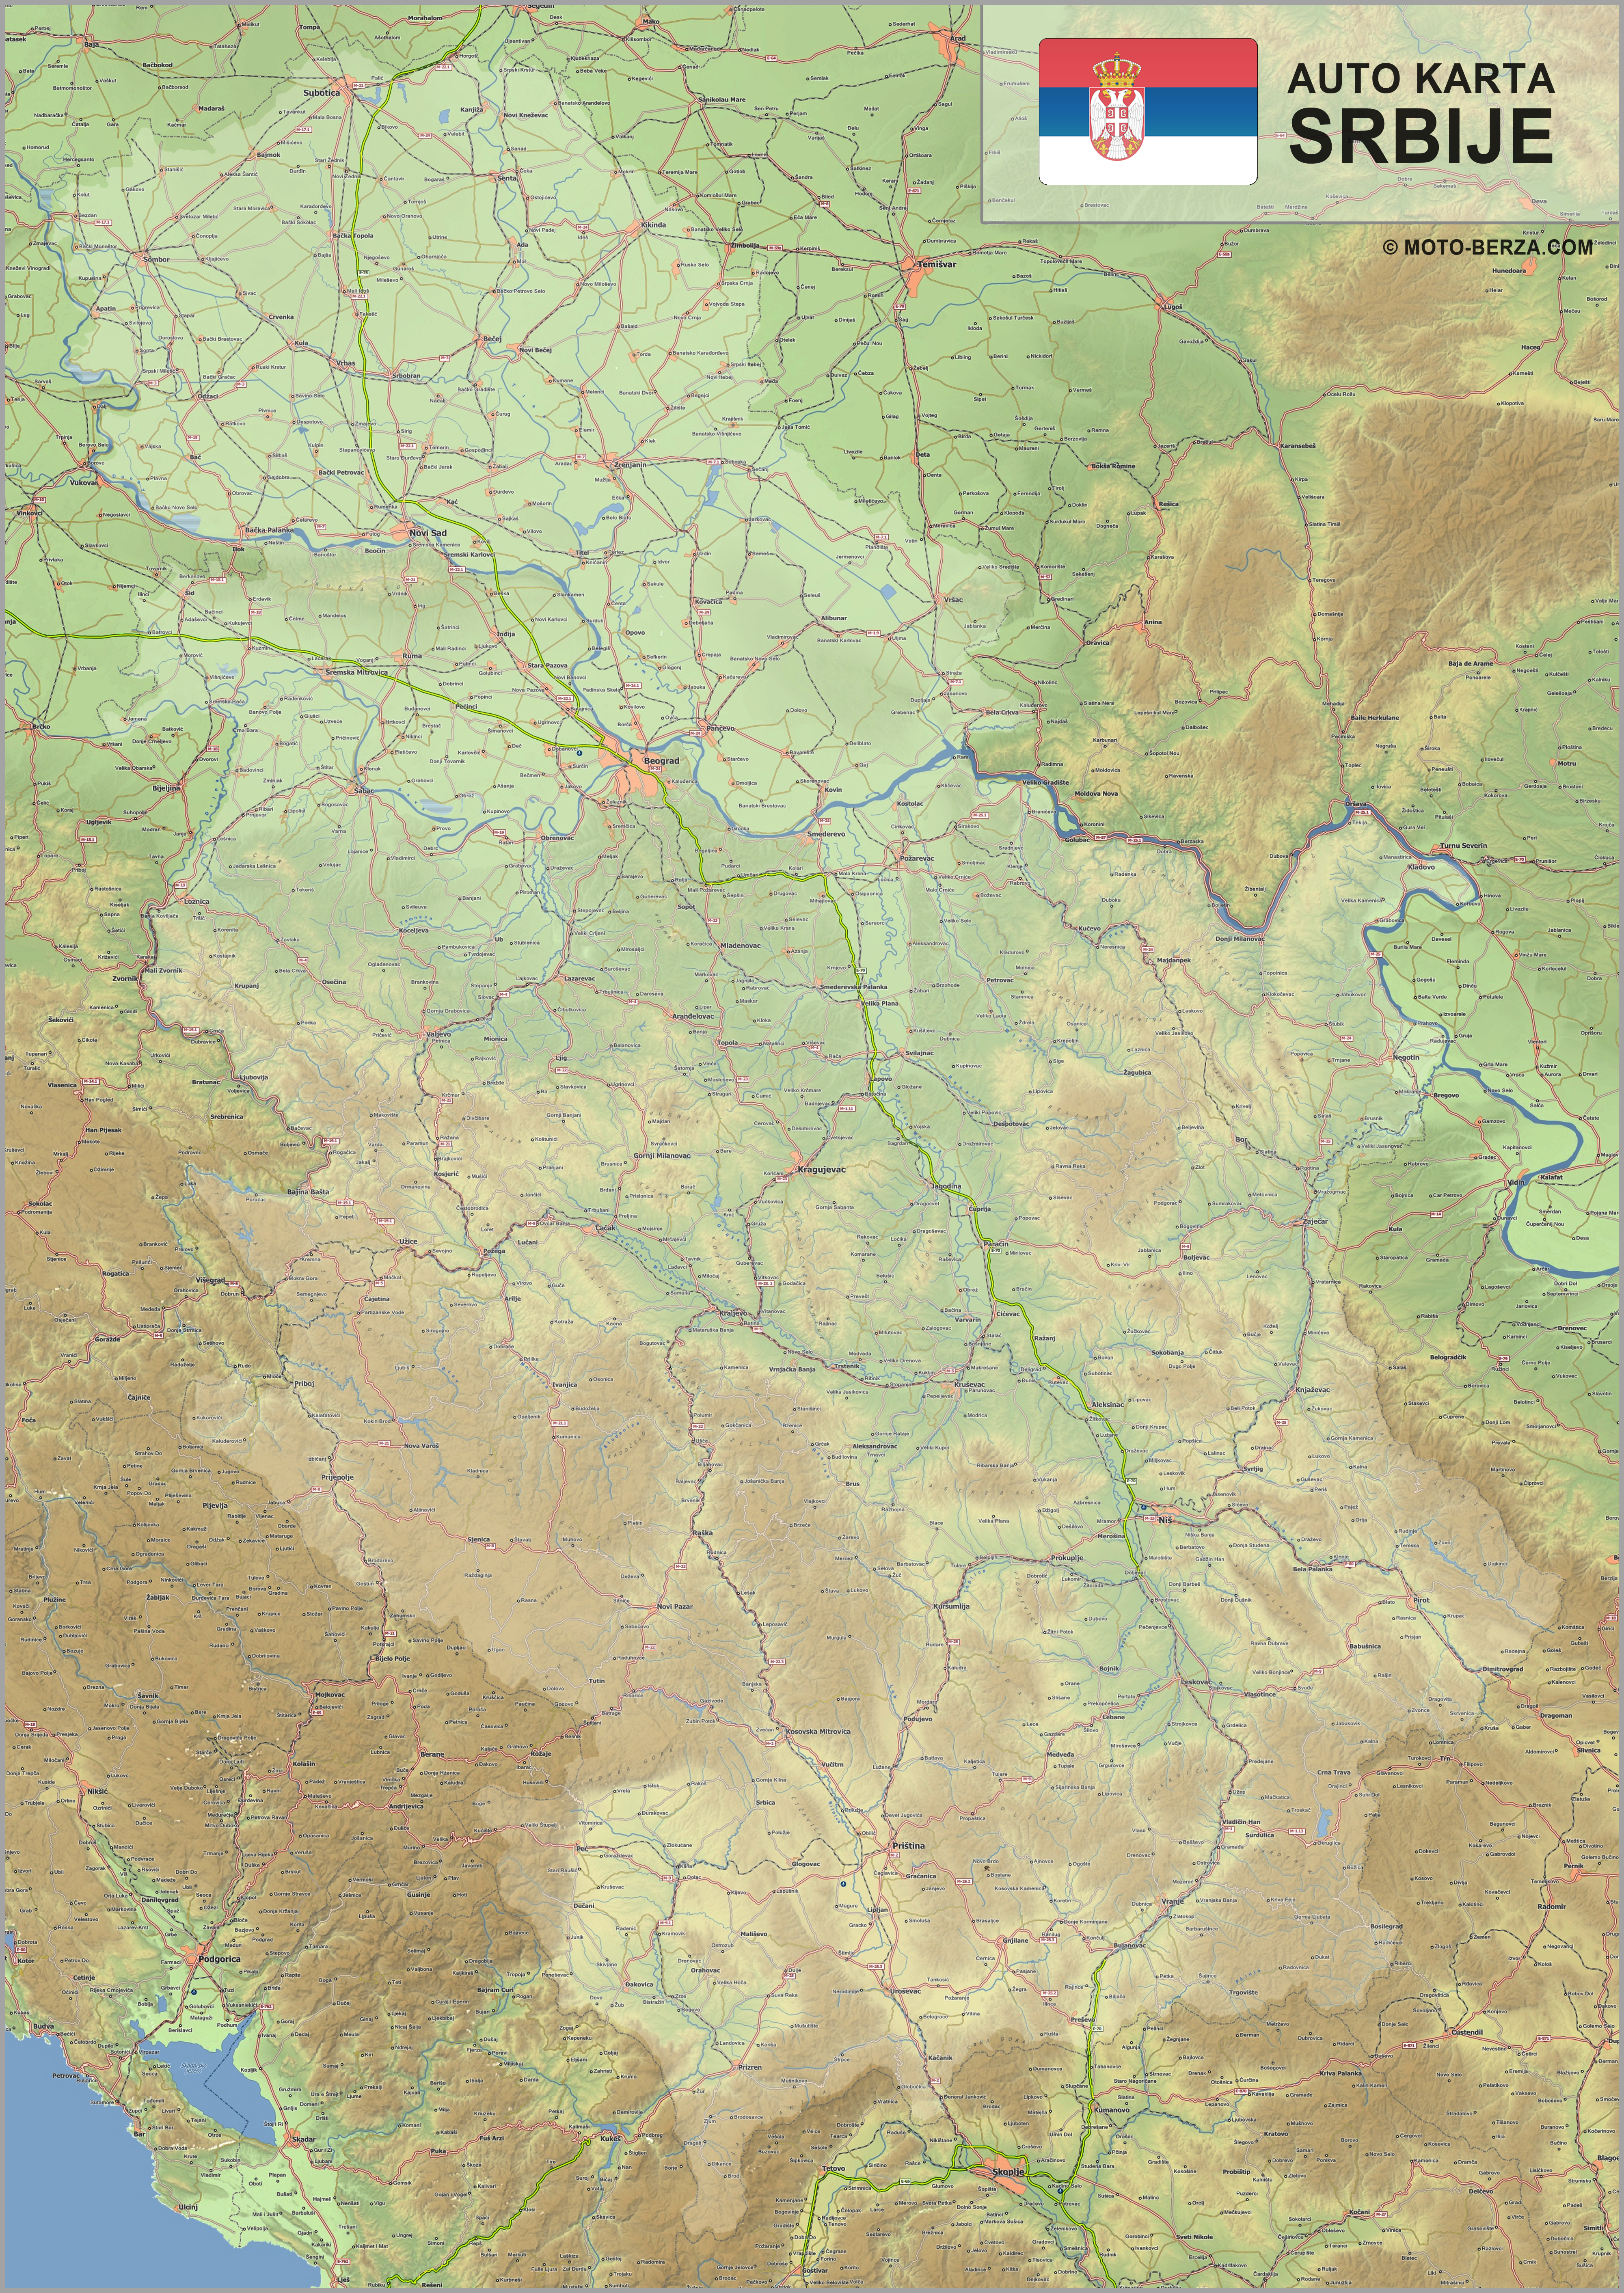 digitalna mapa srbije i crne gore Mapa srbije   Auto karta Srbije   Geografska karta sa putevima digitalna mapa srbije i crne gore